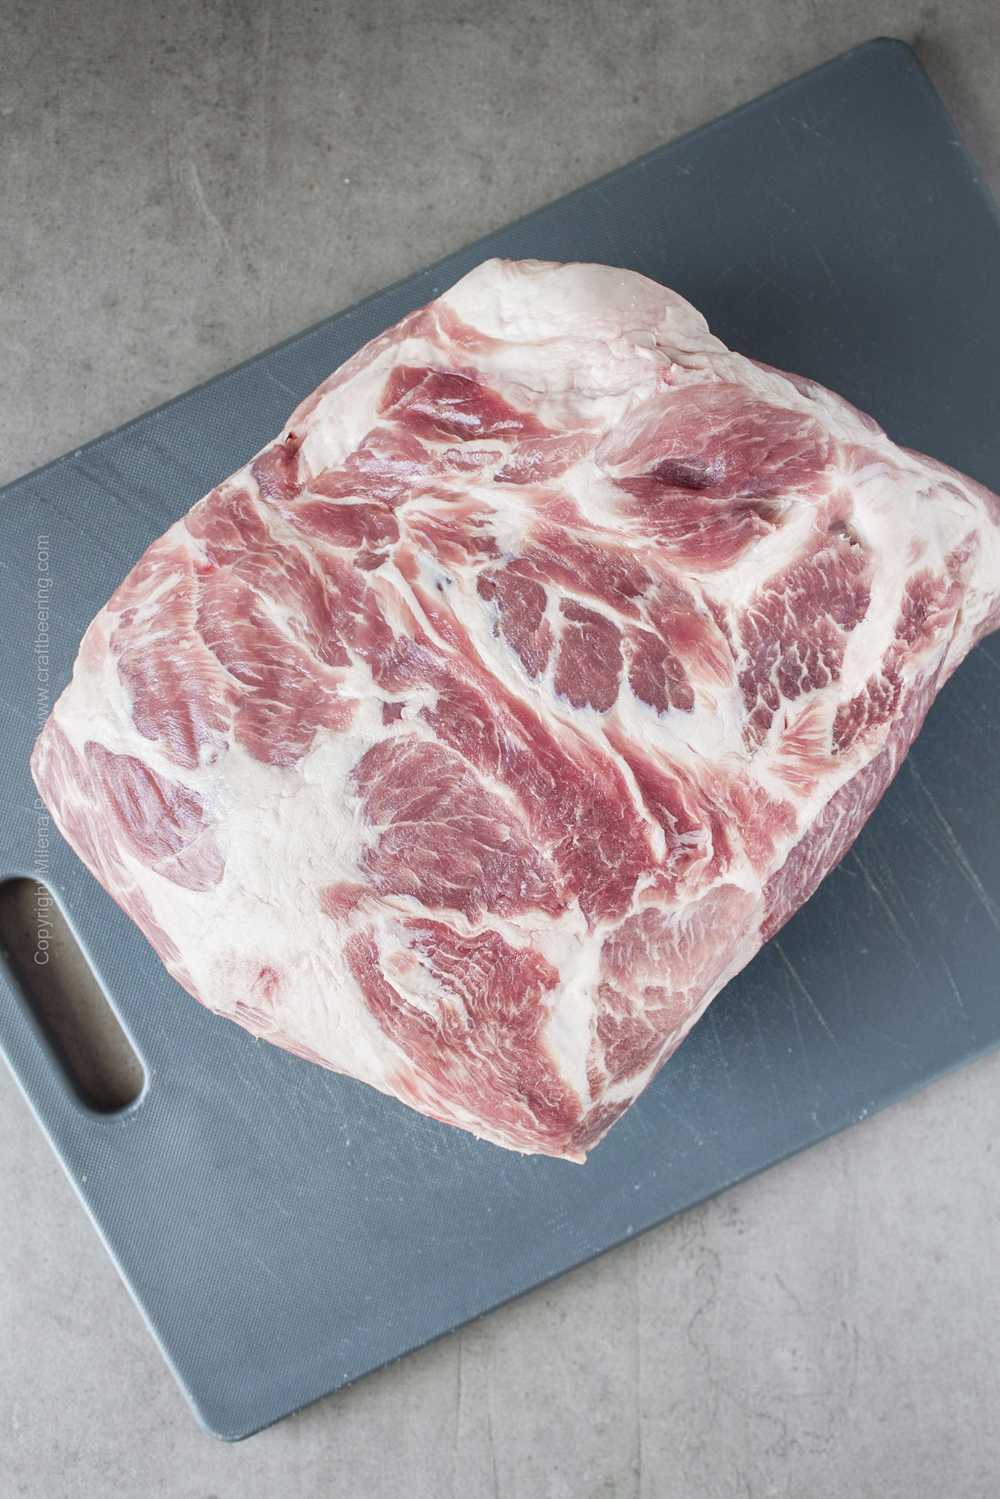 Épaule de porc prête à steak.